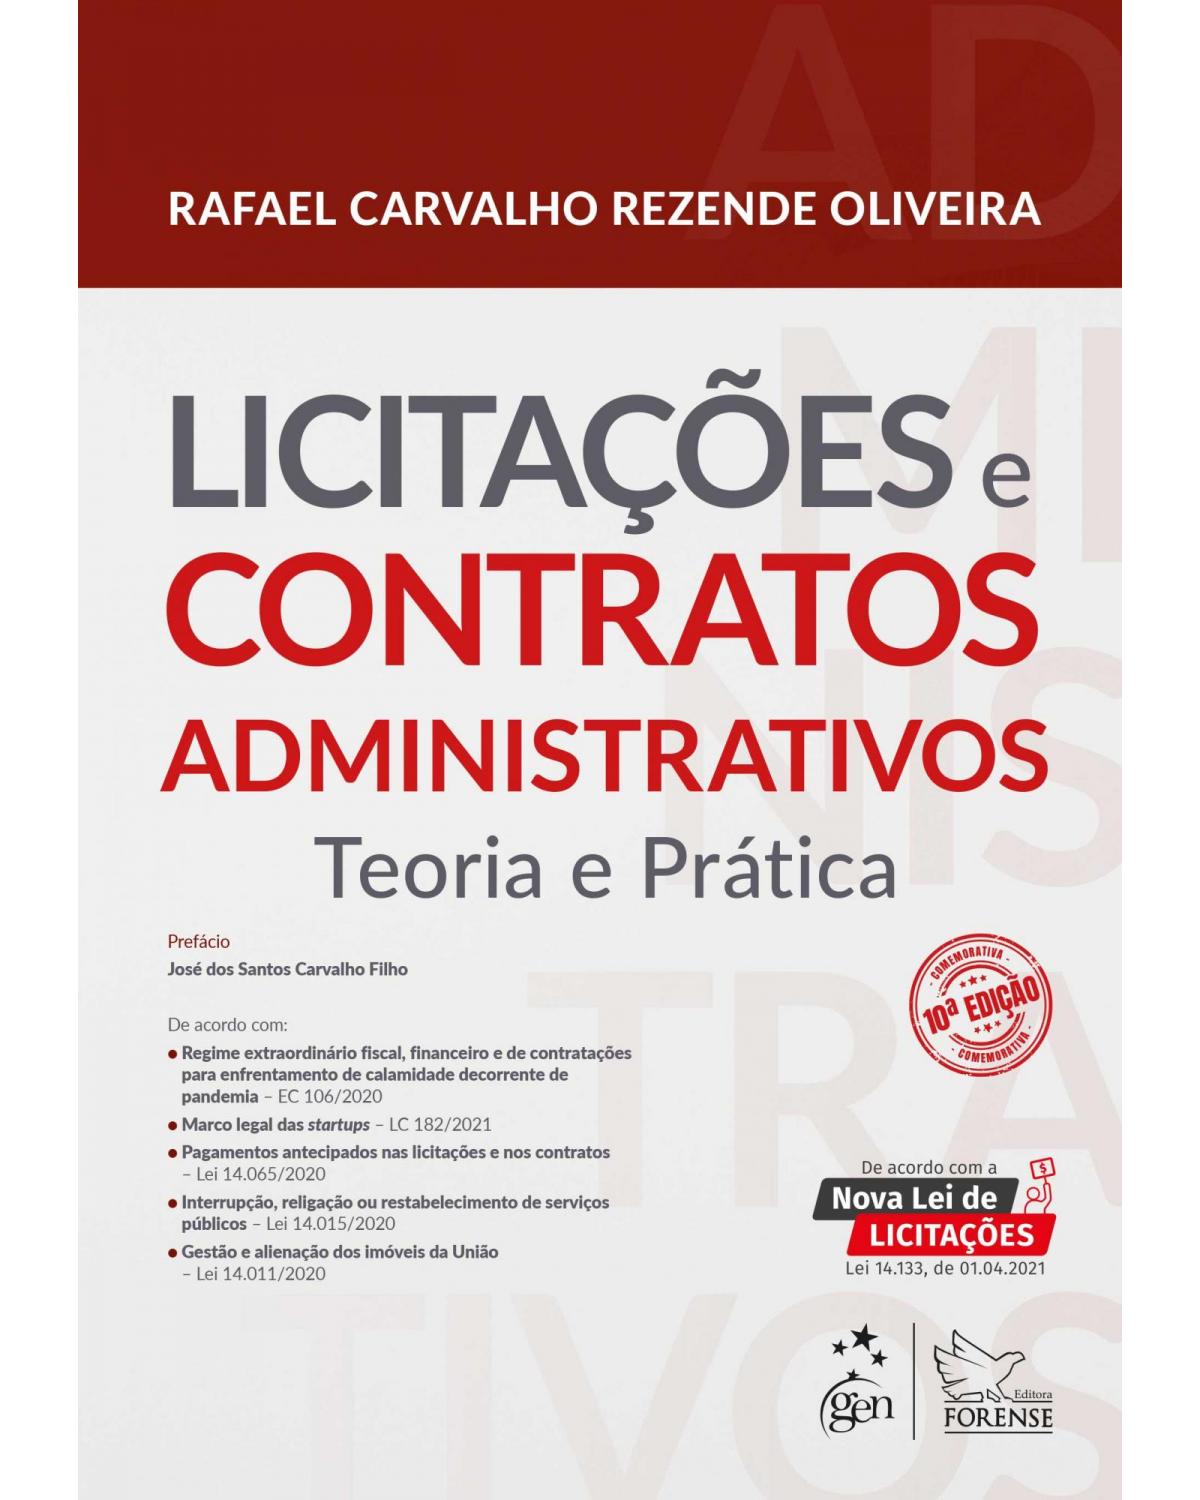 Licitações e contratos administrativos - teoria e prática - 10ª Edição | 2021